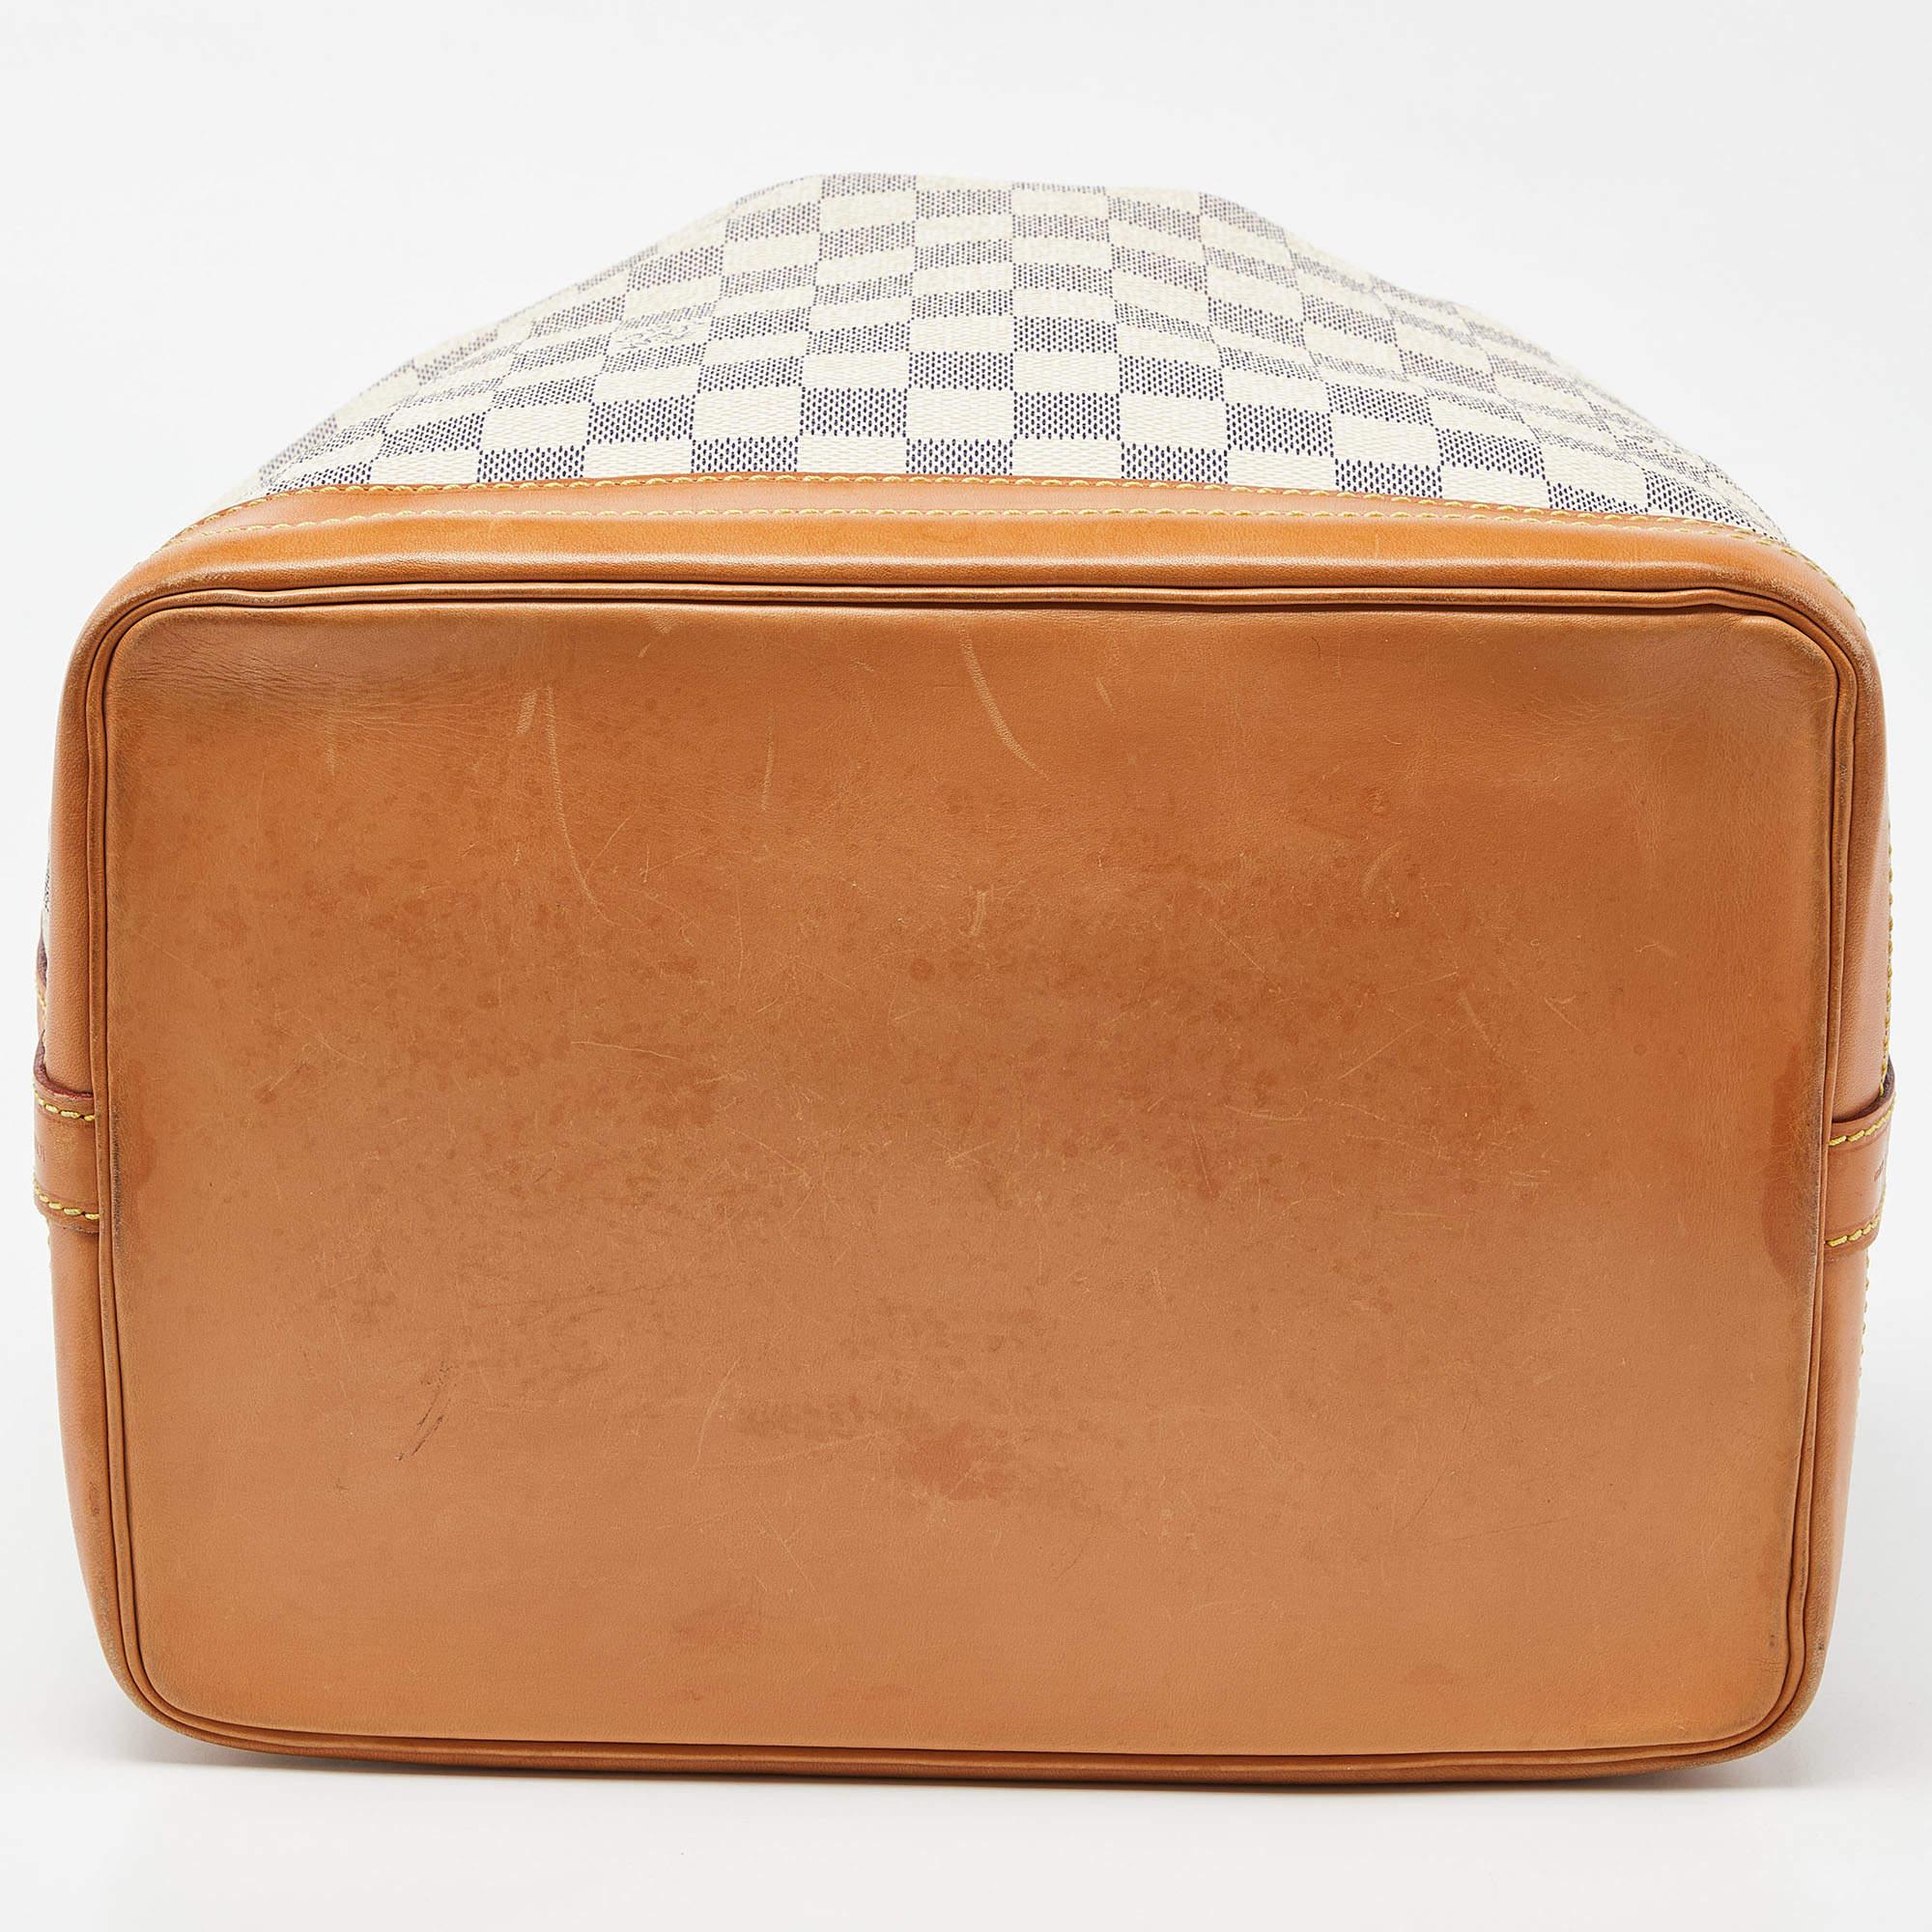 Louis Vuitton Damier Azur Canvas Noe Bag 4